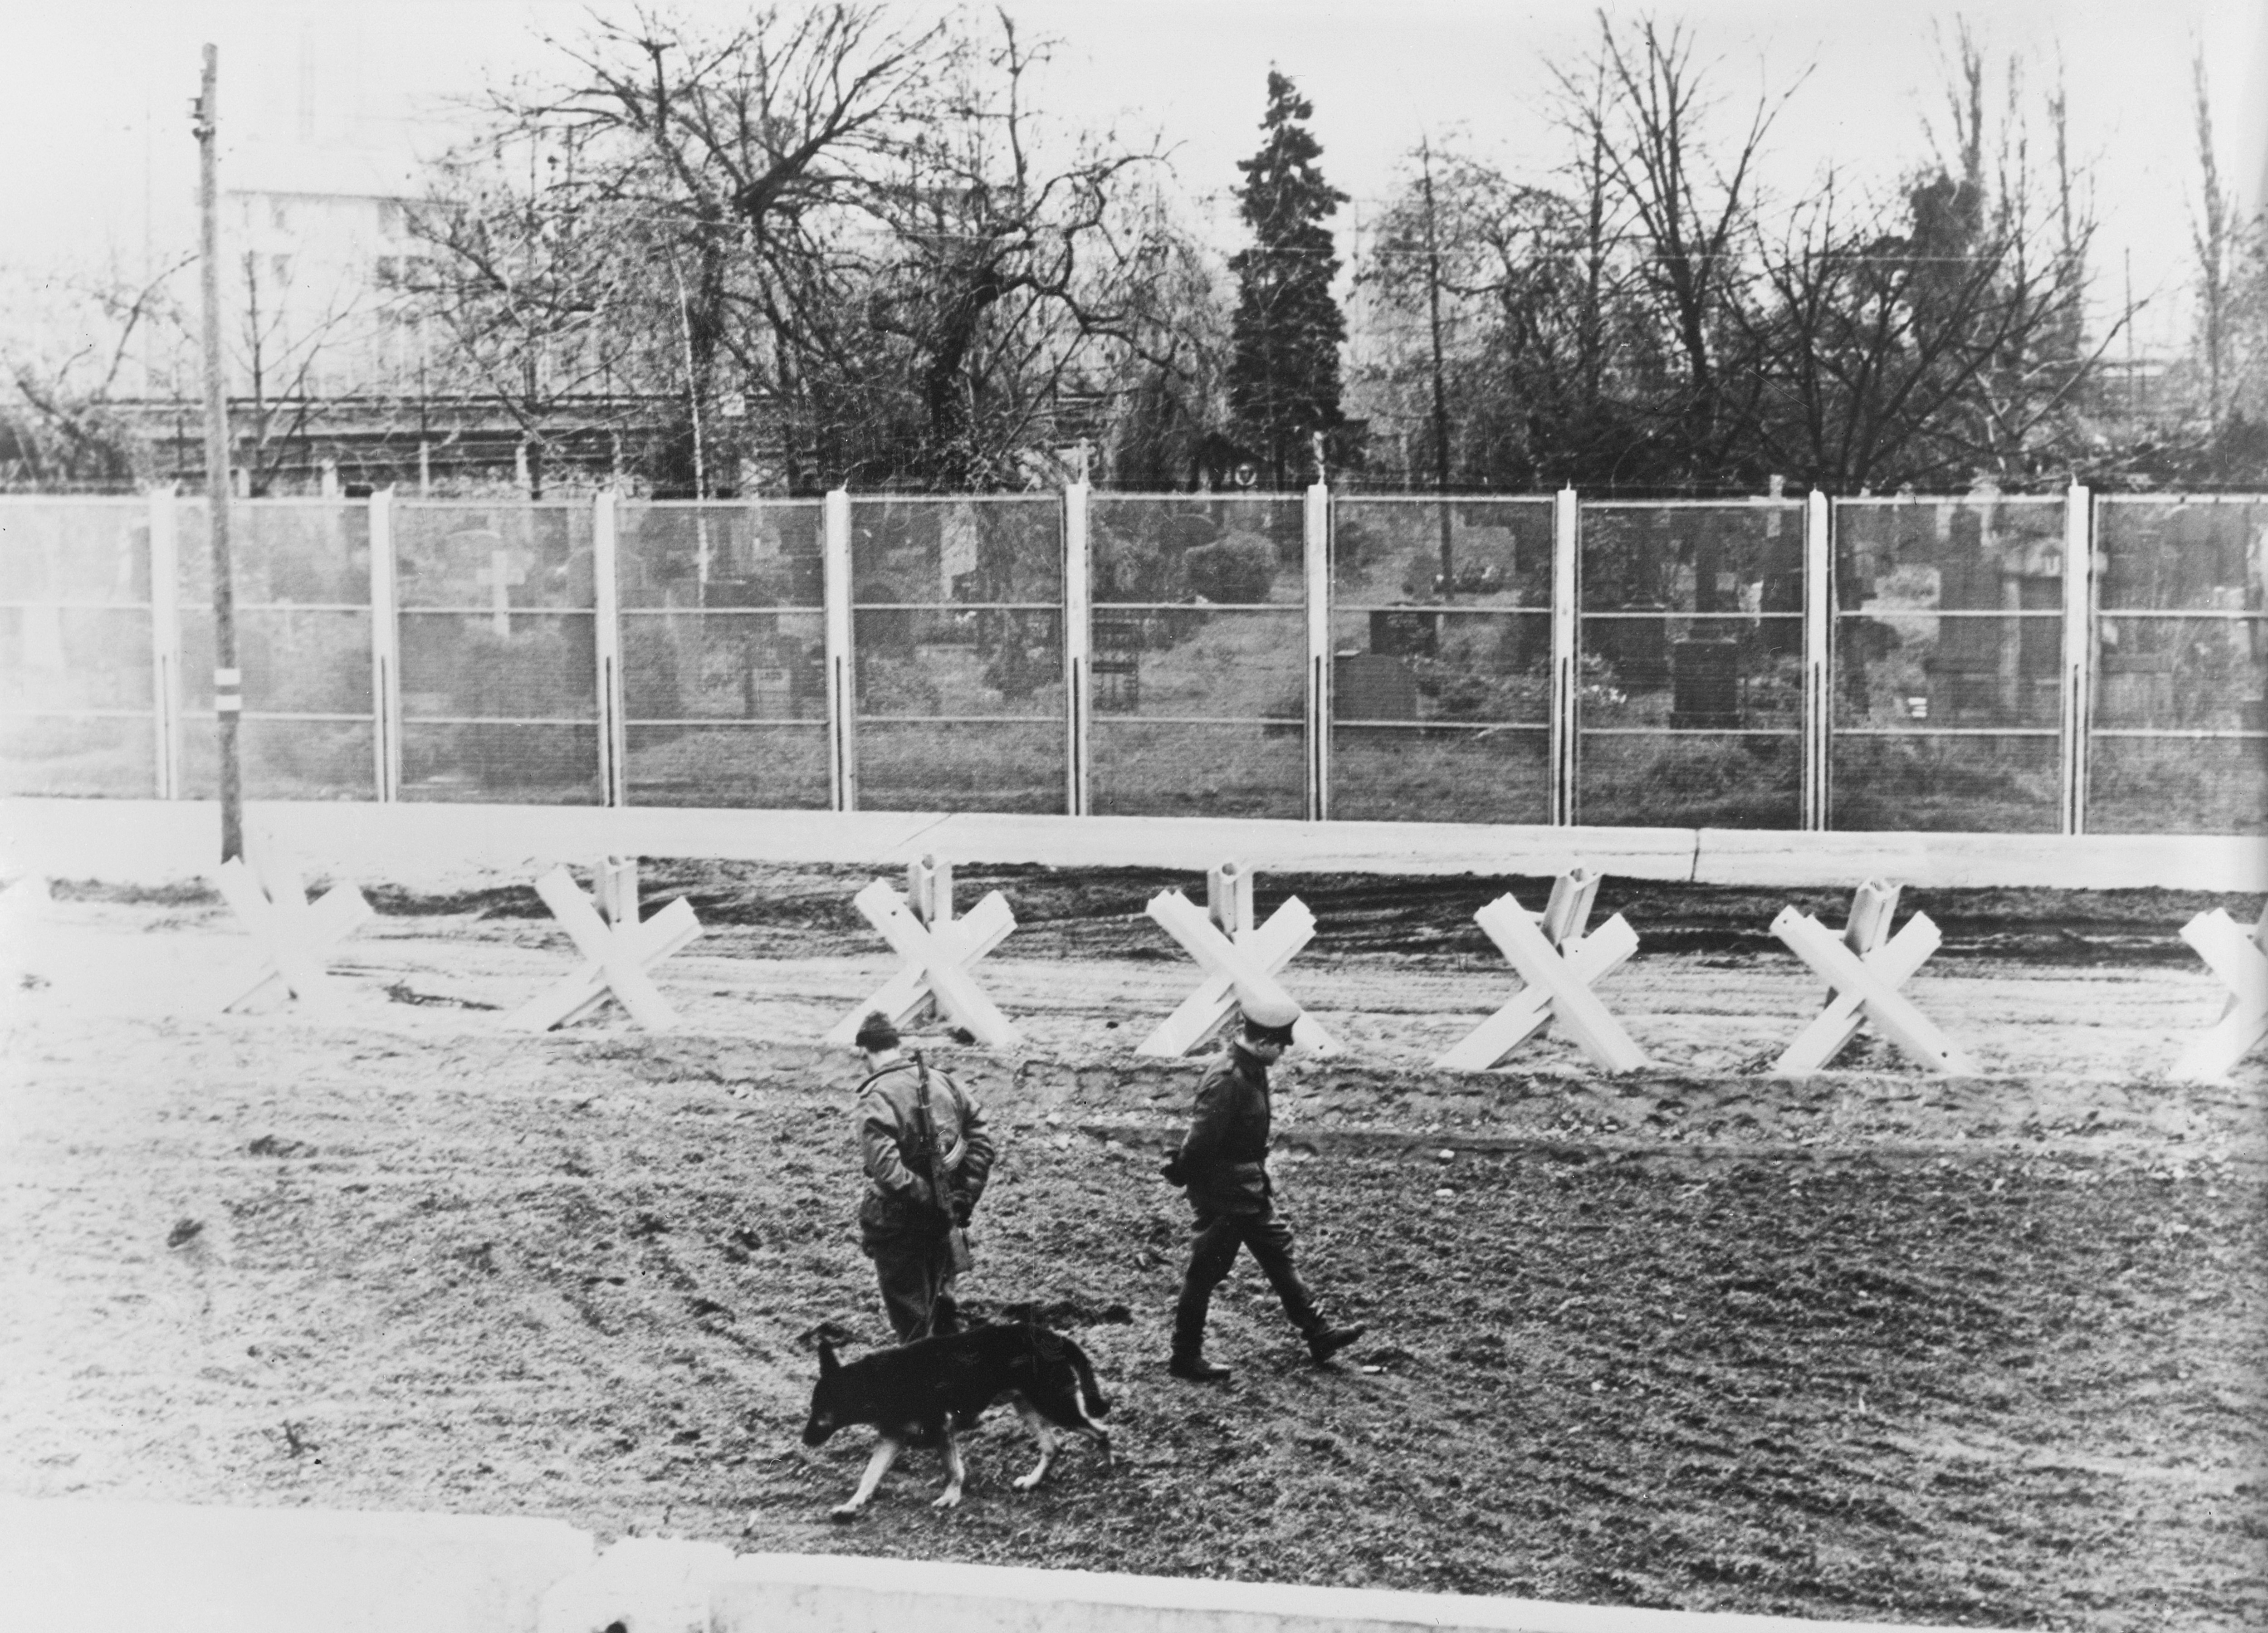 Guardie di frontiera della Germania Orientale, nel 1967, sorvegliano con i cani la cosiddetta “striscia della morte”, lo spazio che intercorre tra i due muri costruiti a distanza di 10 metri circa. Le guardie hanno l’ordine di sparare a chiunque si trovi all’interno di questa area